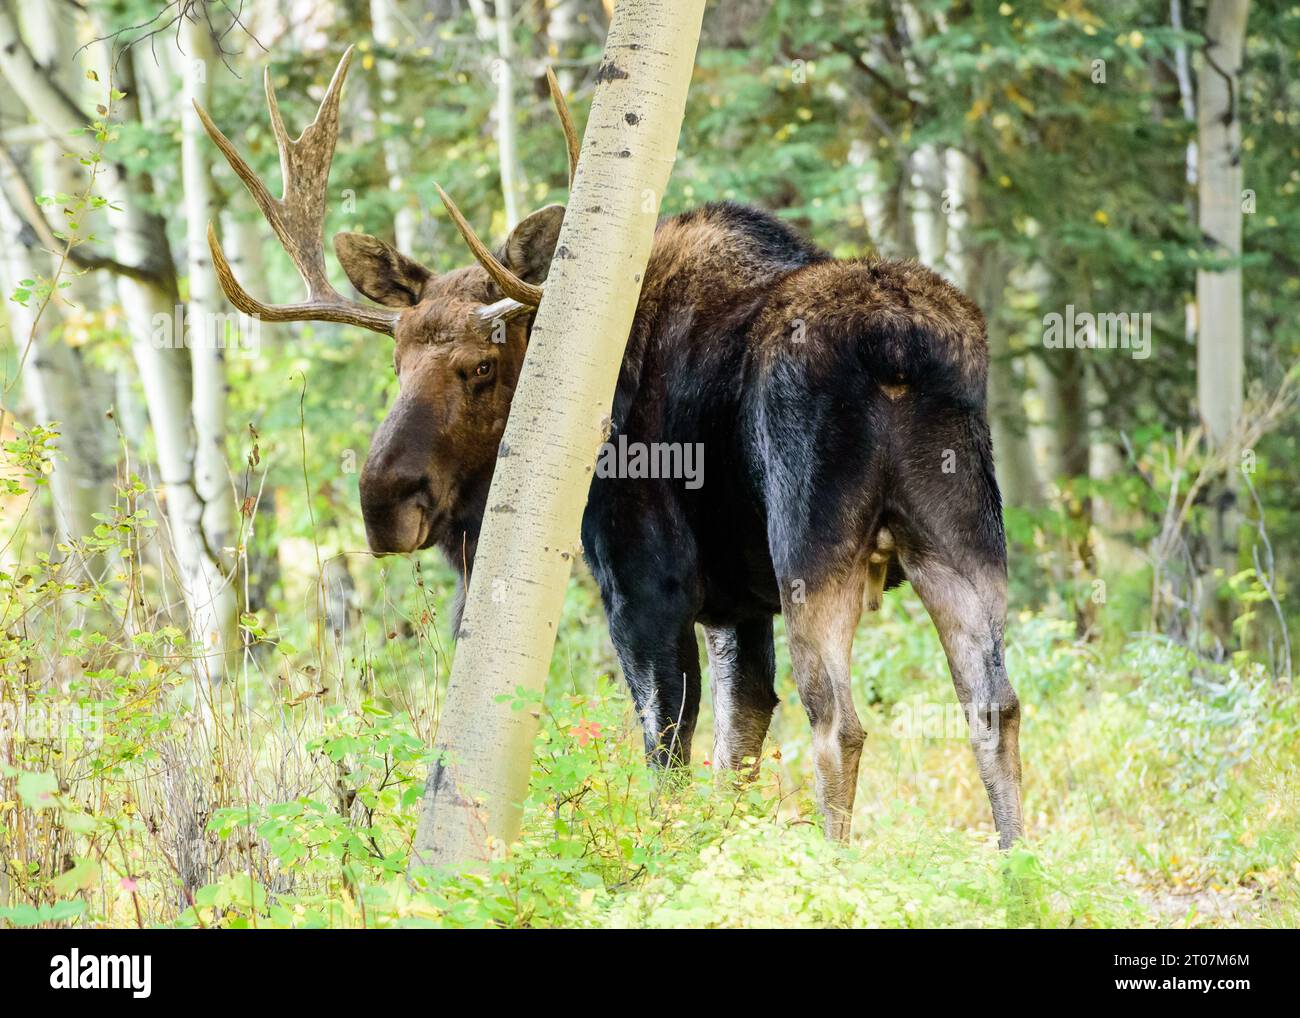 Bull moose in rut Stock Photo